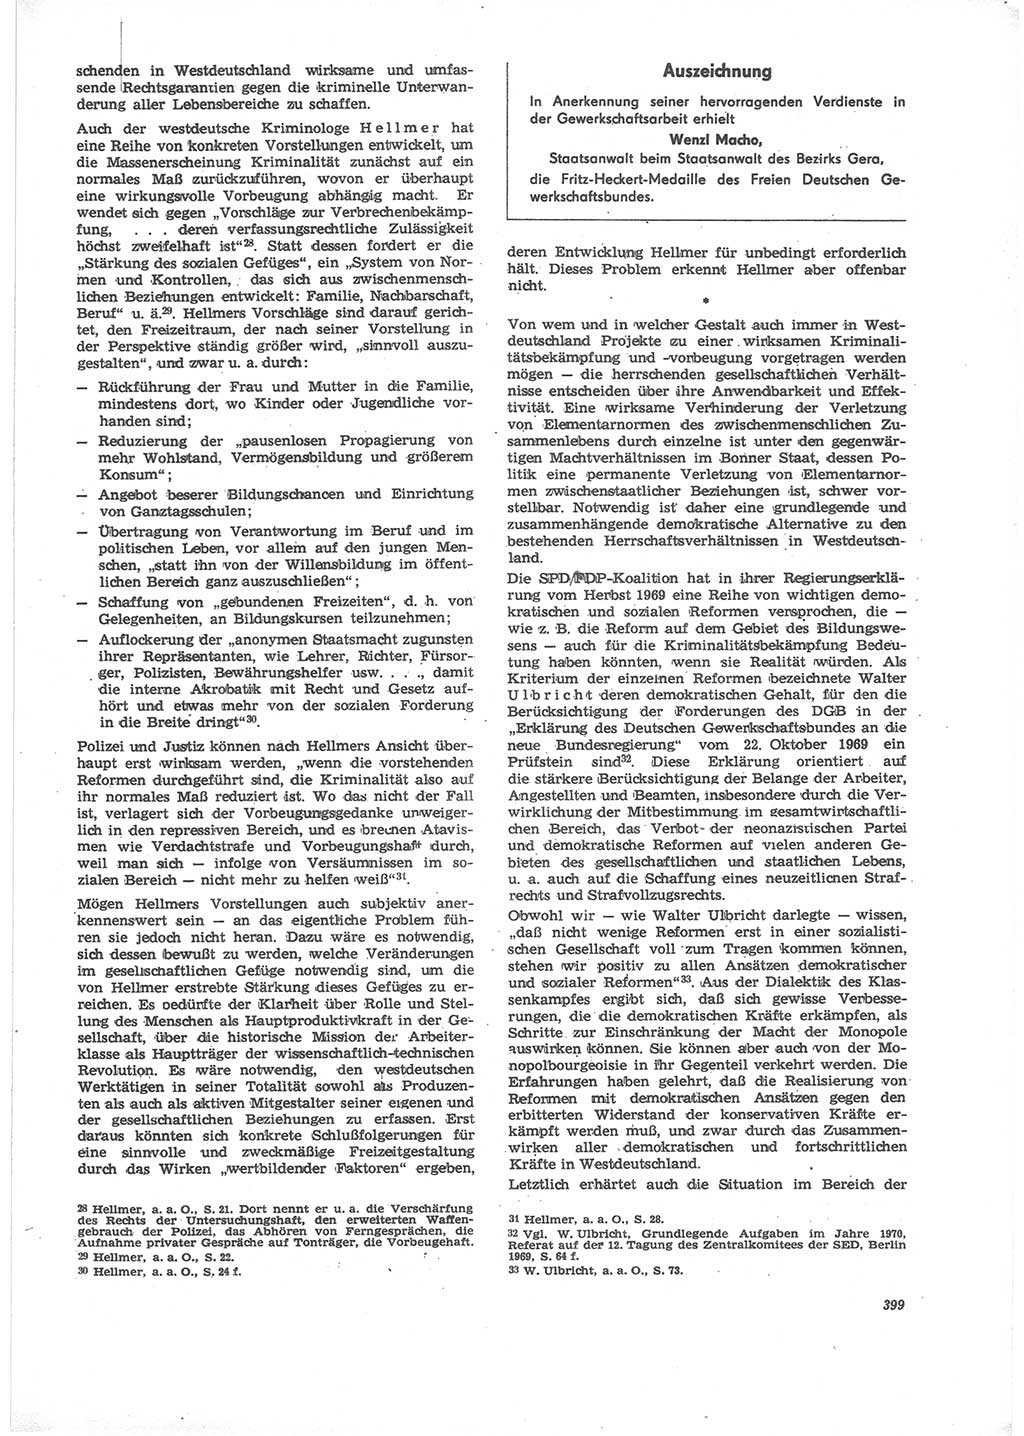 Neue Justiz (NJ), Zeitschrift für Recht und Rechtswissenschaft [Deutsche Demokratische Republik (DDR)], 24. Jahrgang 1970, Seite 399 (NJ DDR 1970, S. 399)